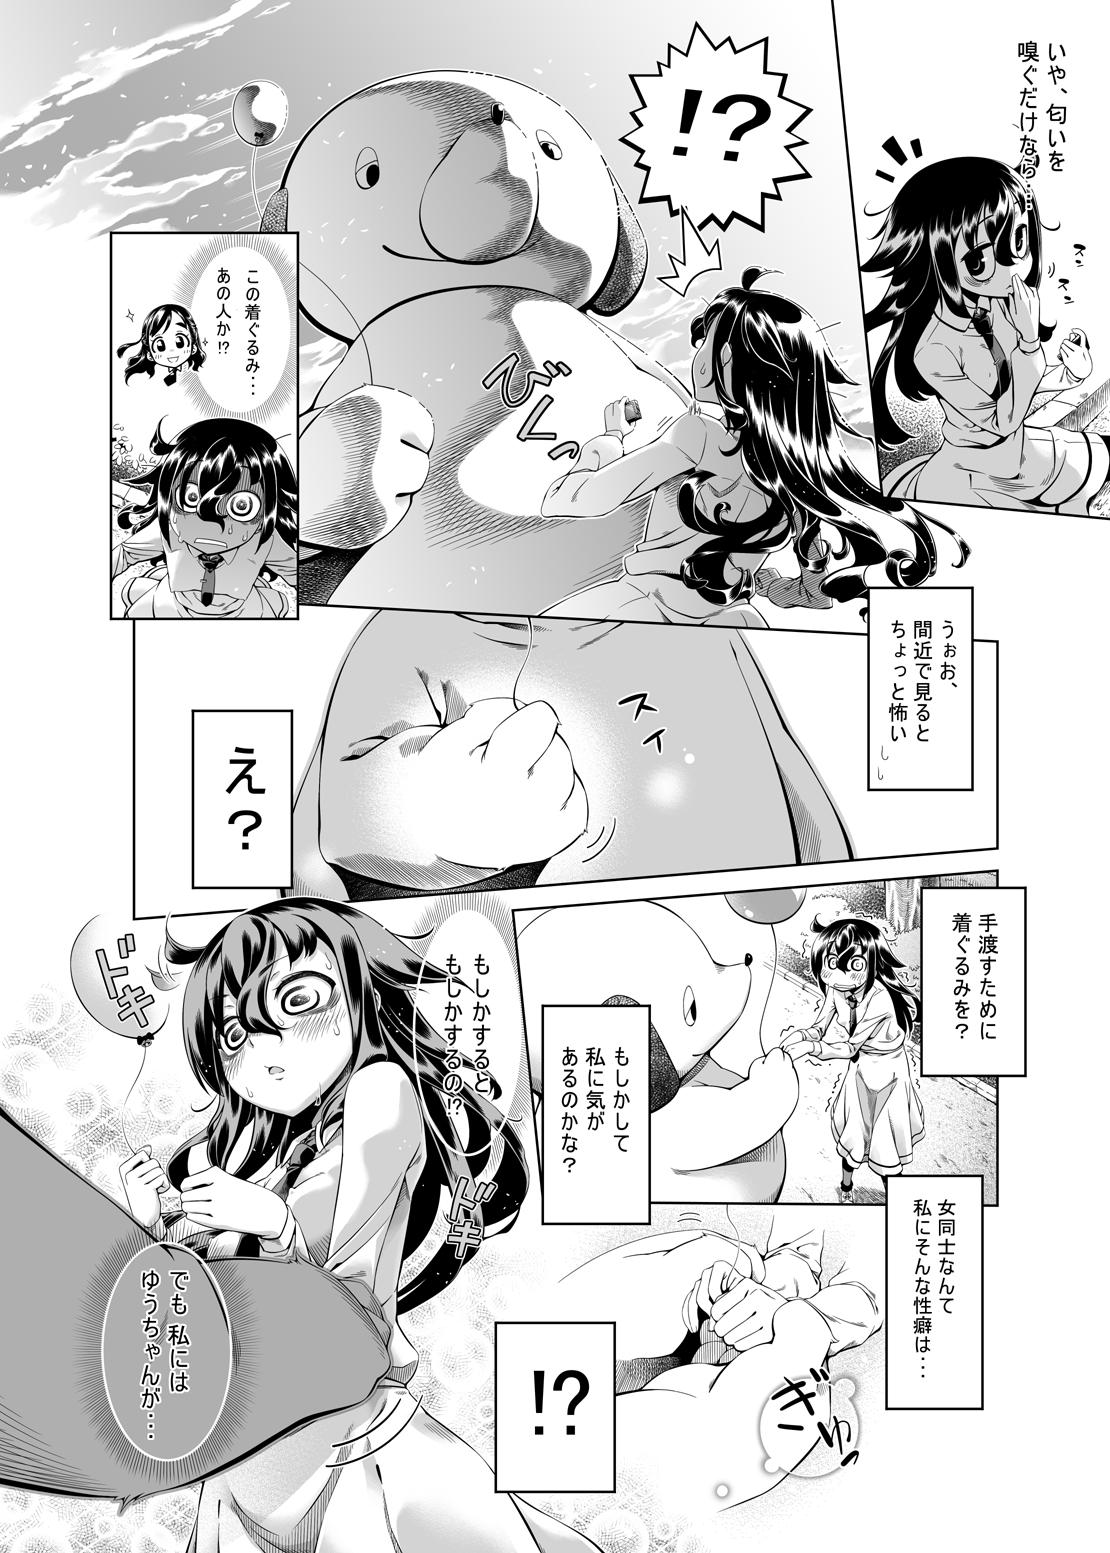 Teen Watashi ga Kimashita no wa dou Kangaete mo Senpai ga Warui! - Its not my fault that im not popular Sucking Cocks - Page 3